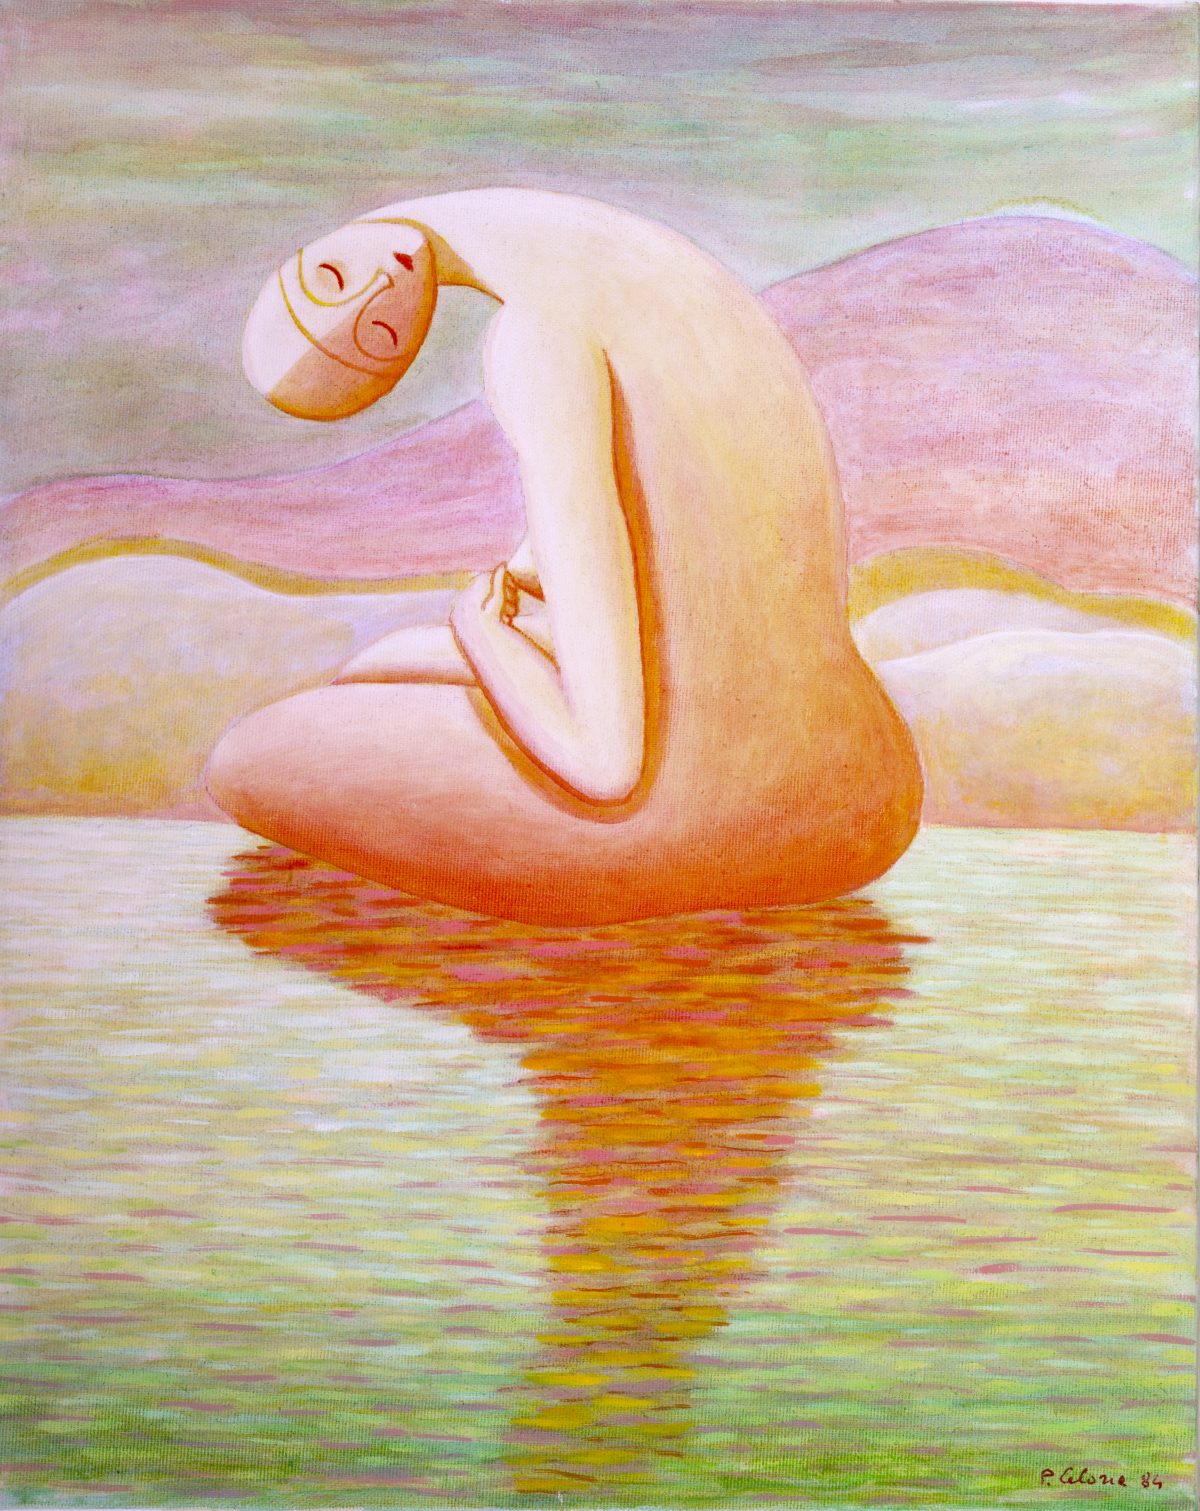 Figura sull'acqua, 1984
Olio su tela
50 x 40 cm,
FV052